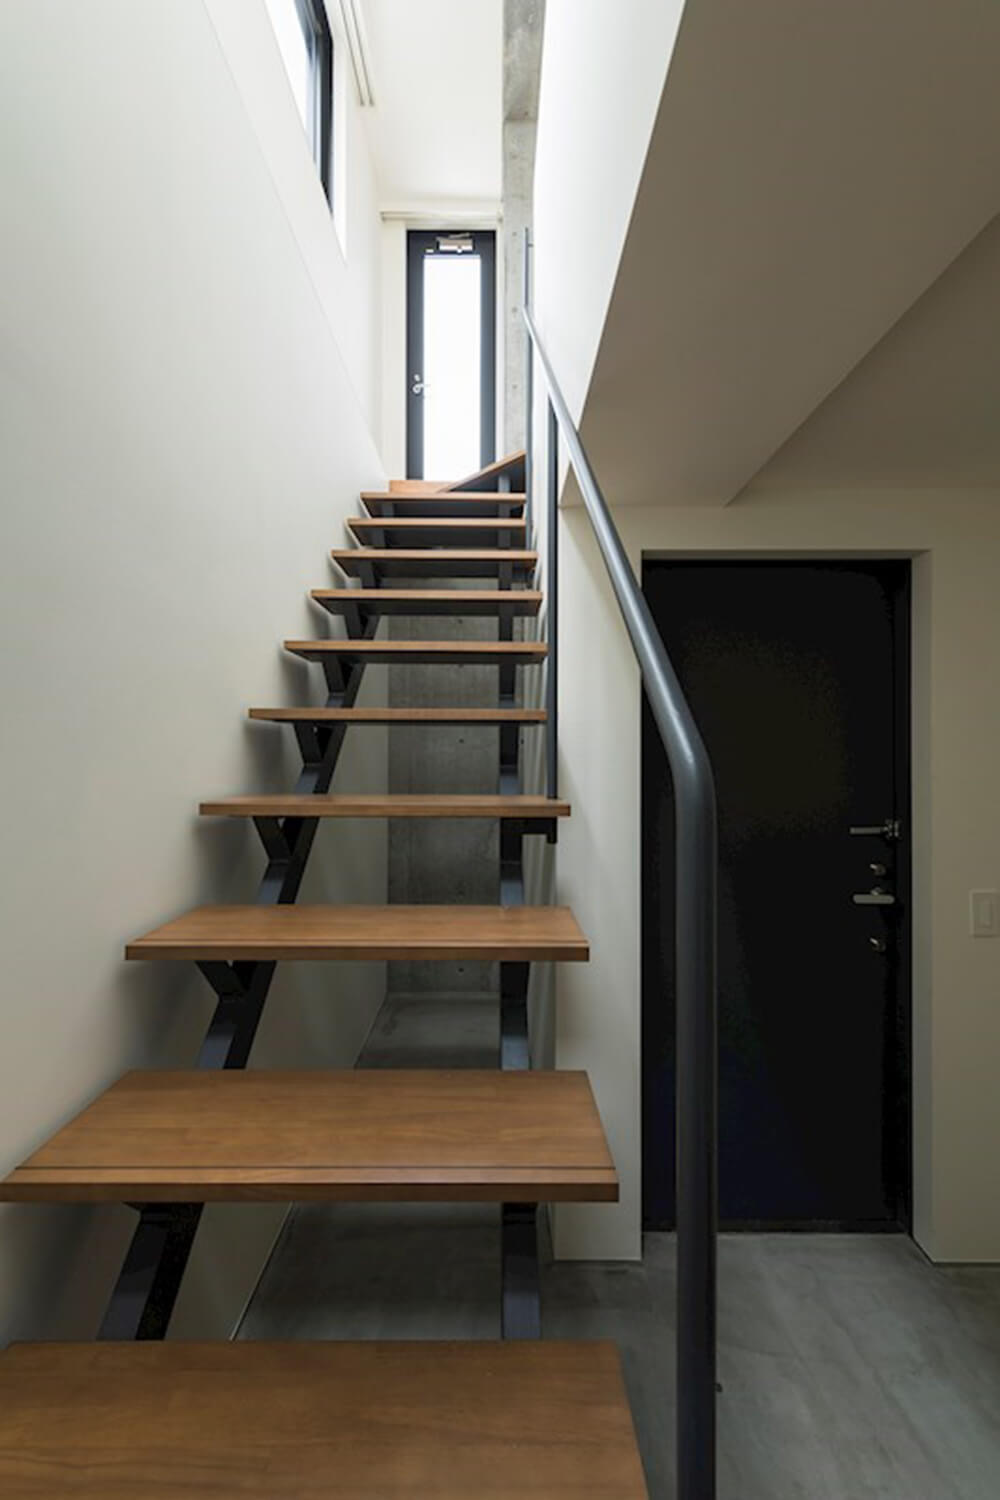 この画像は吉富興産企画デザイナーズマンション居室階段の写真です。